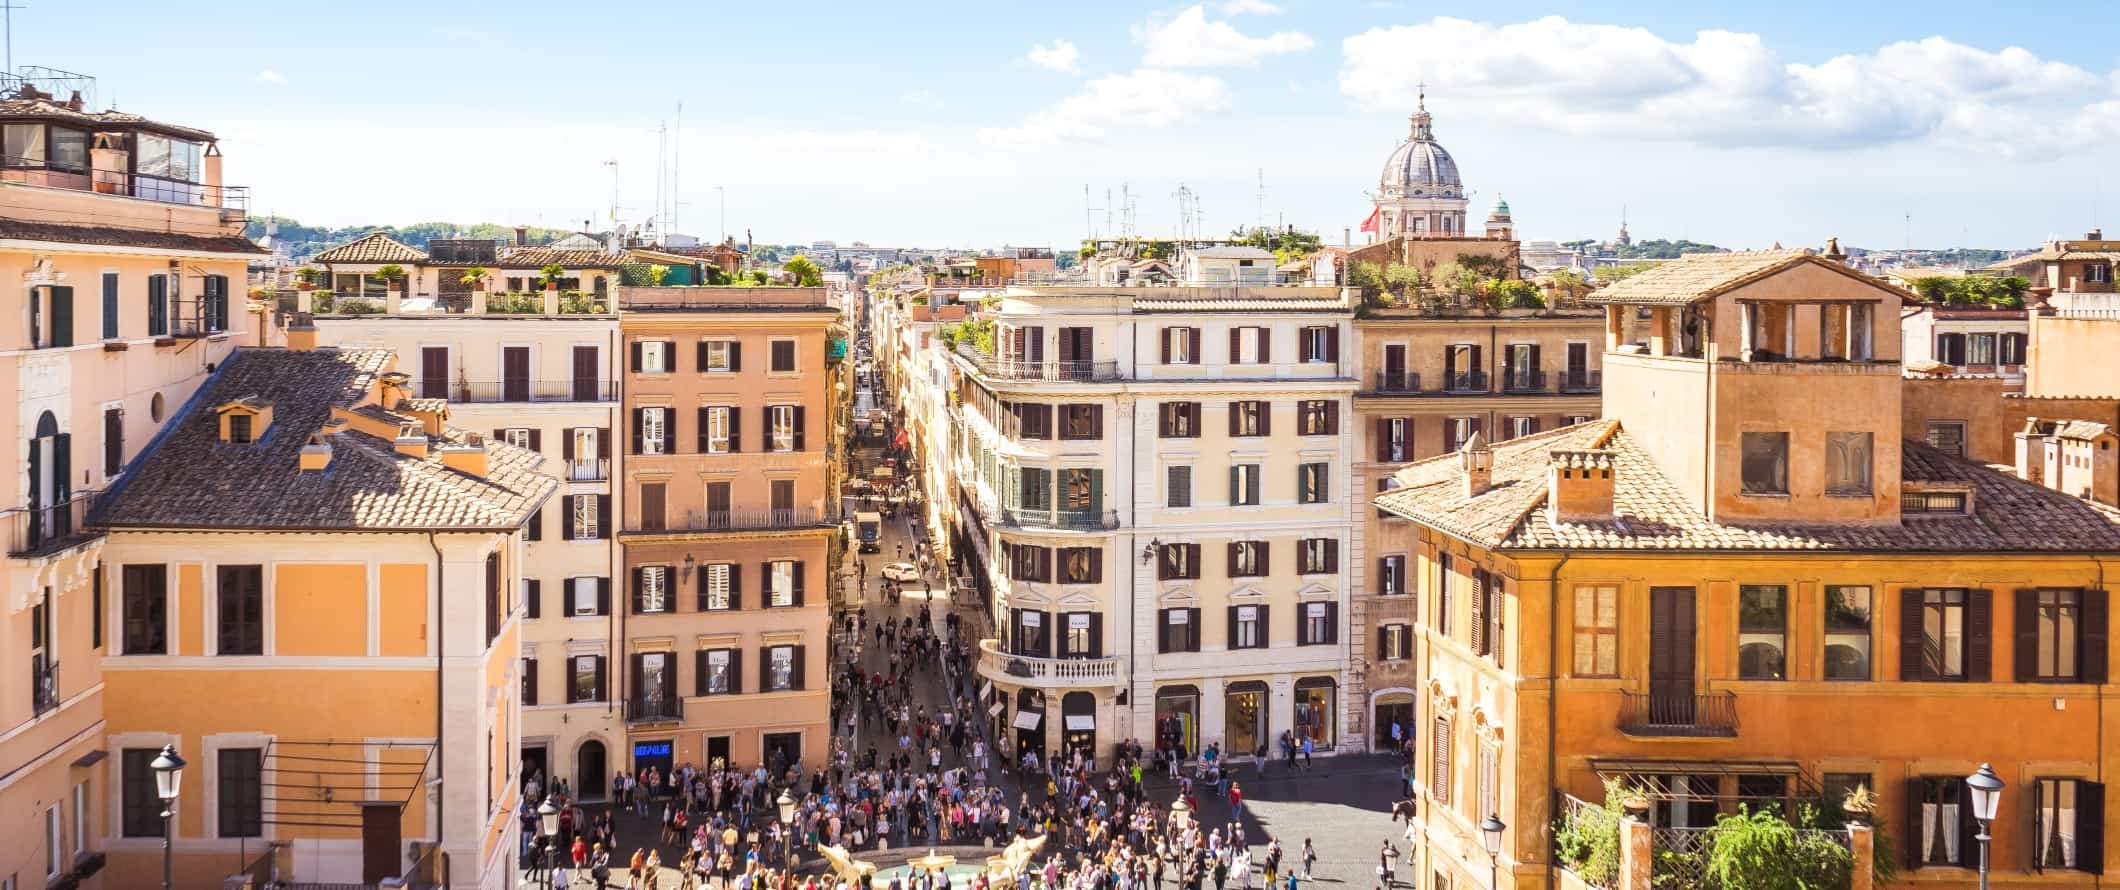 Vista de edifícios em tons pastéis e telhados de terracota em Roma, Itália